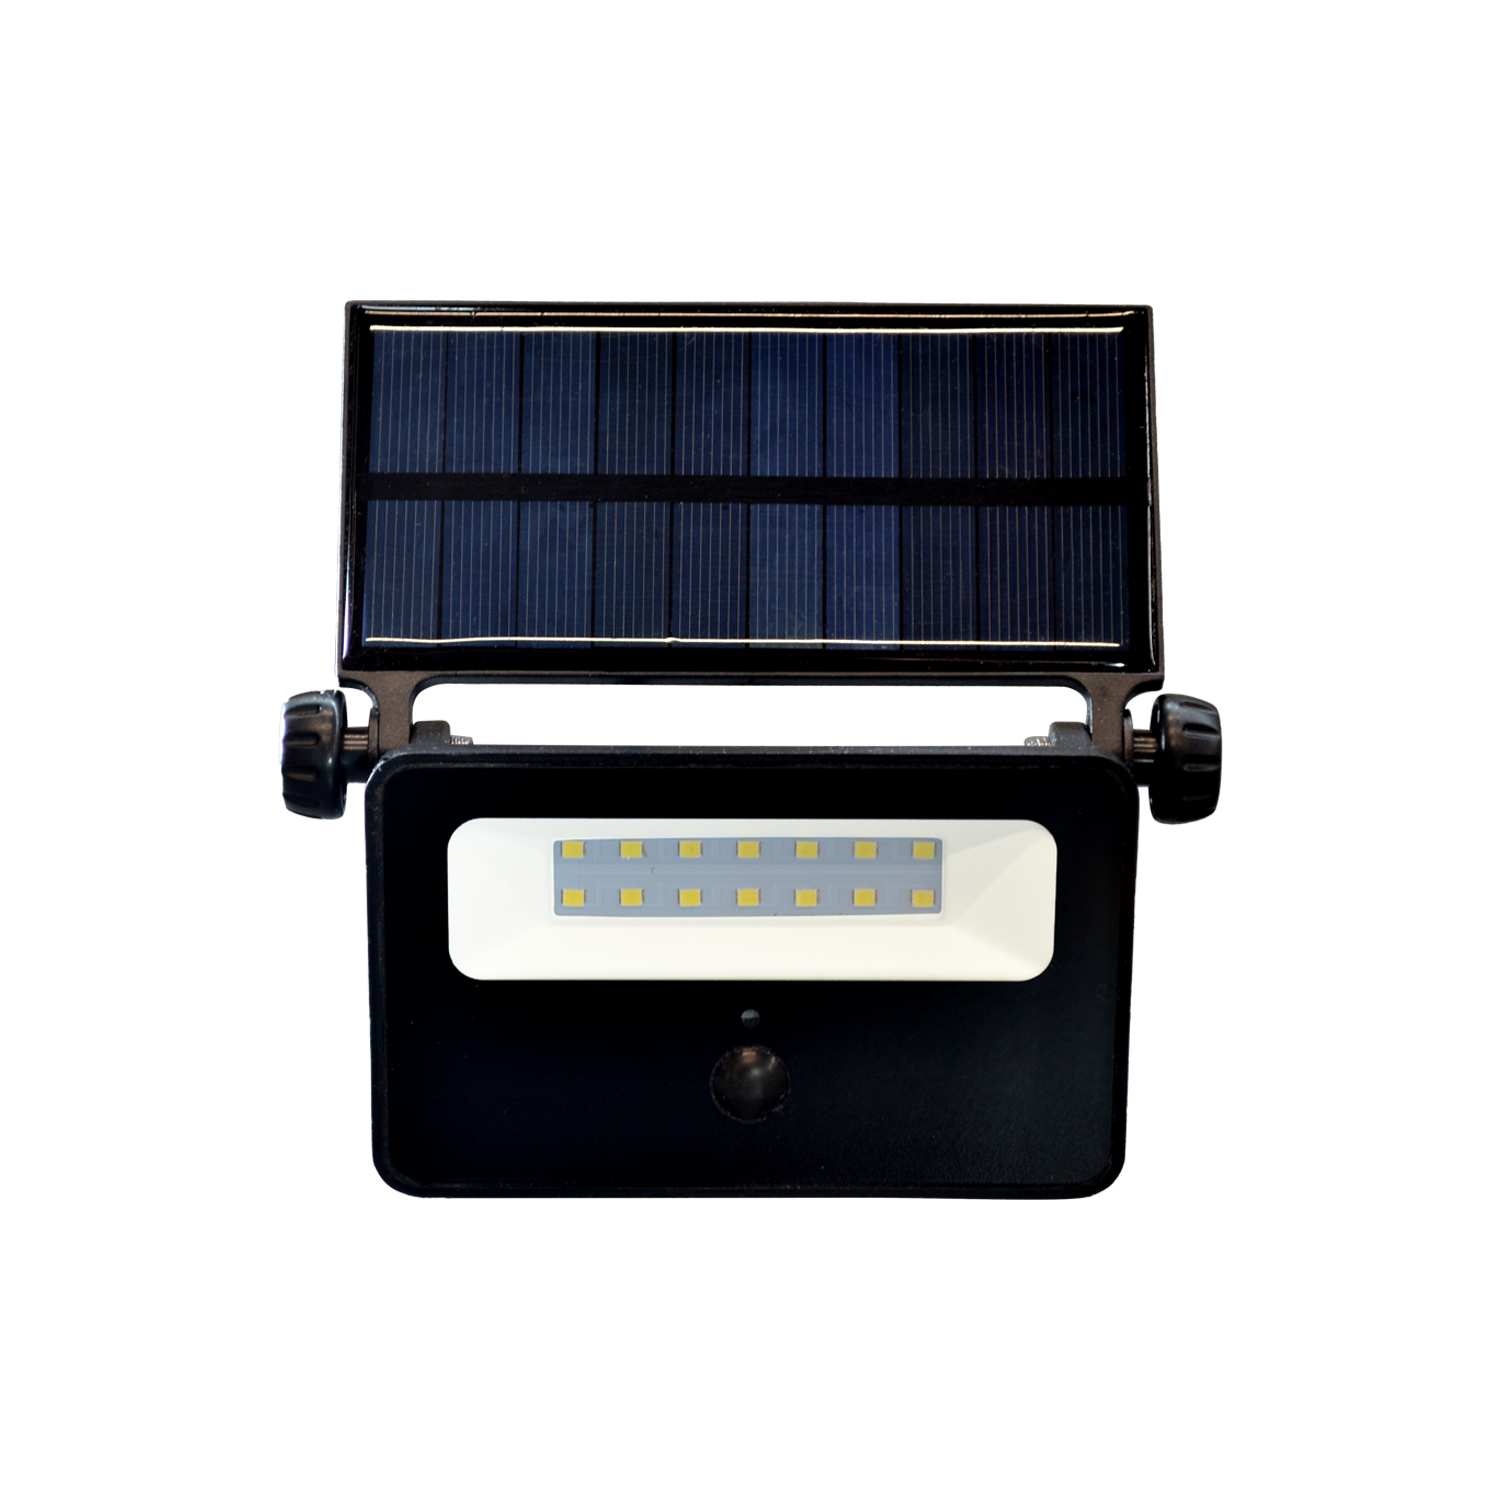 Luminaria LED solar de sobreponer con sensor de movimiento, MS-2916.N65